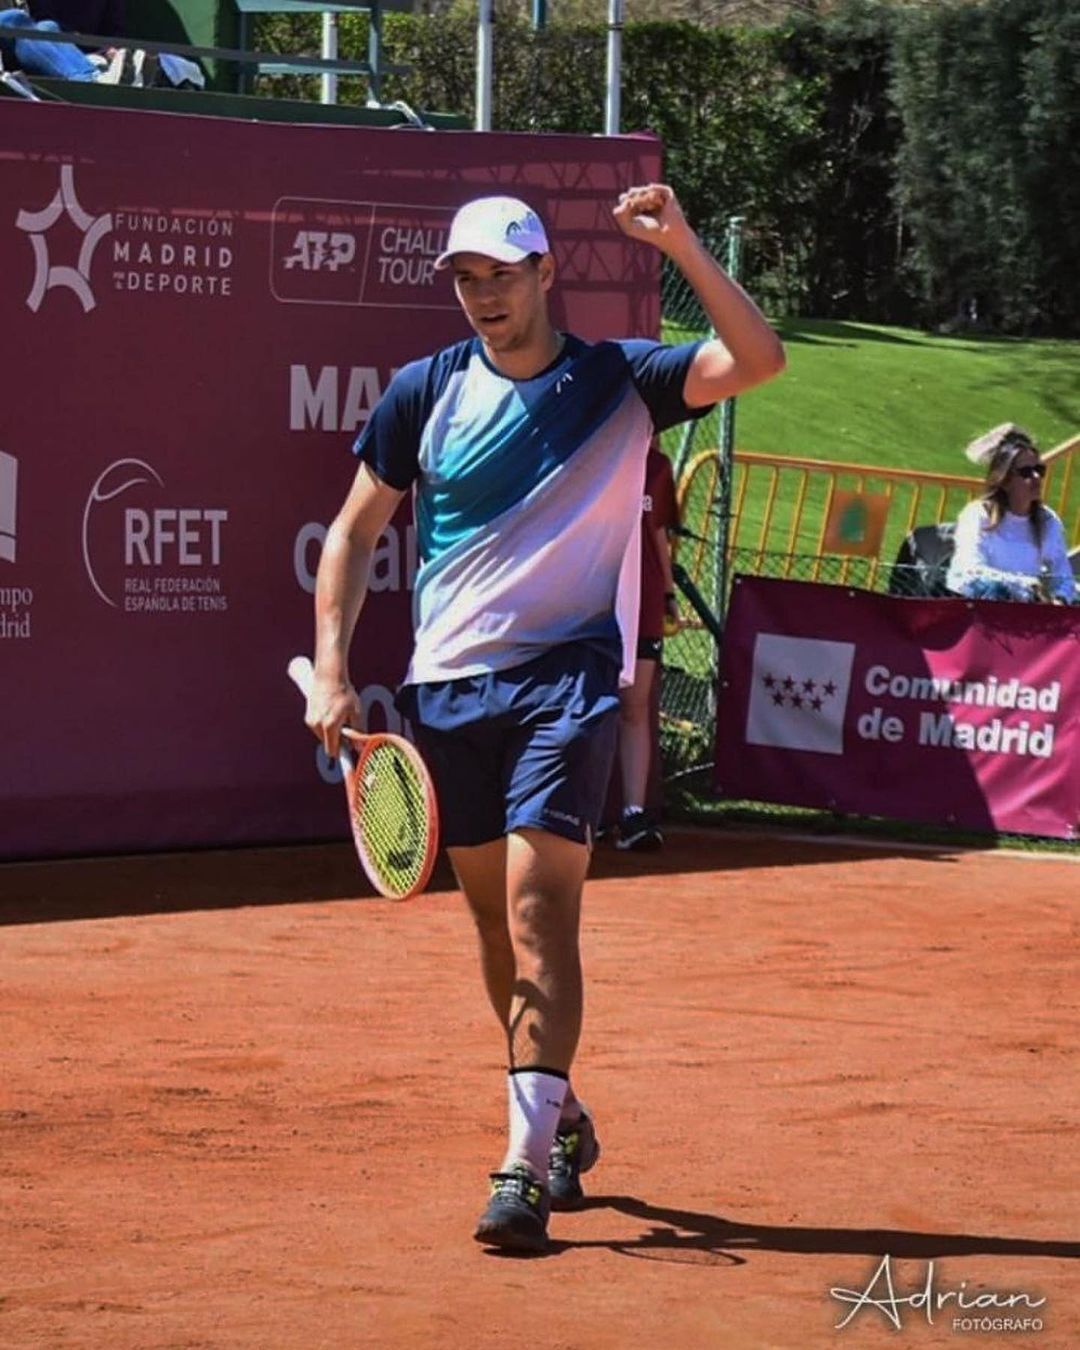 Российский теннисист совершил "омерзительный поступок" на турнире в Мадриде. Видео